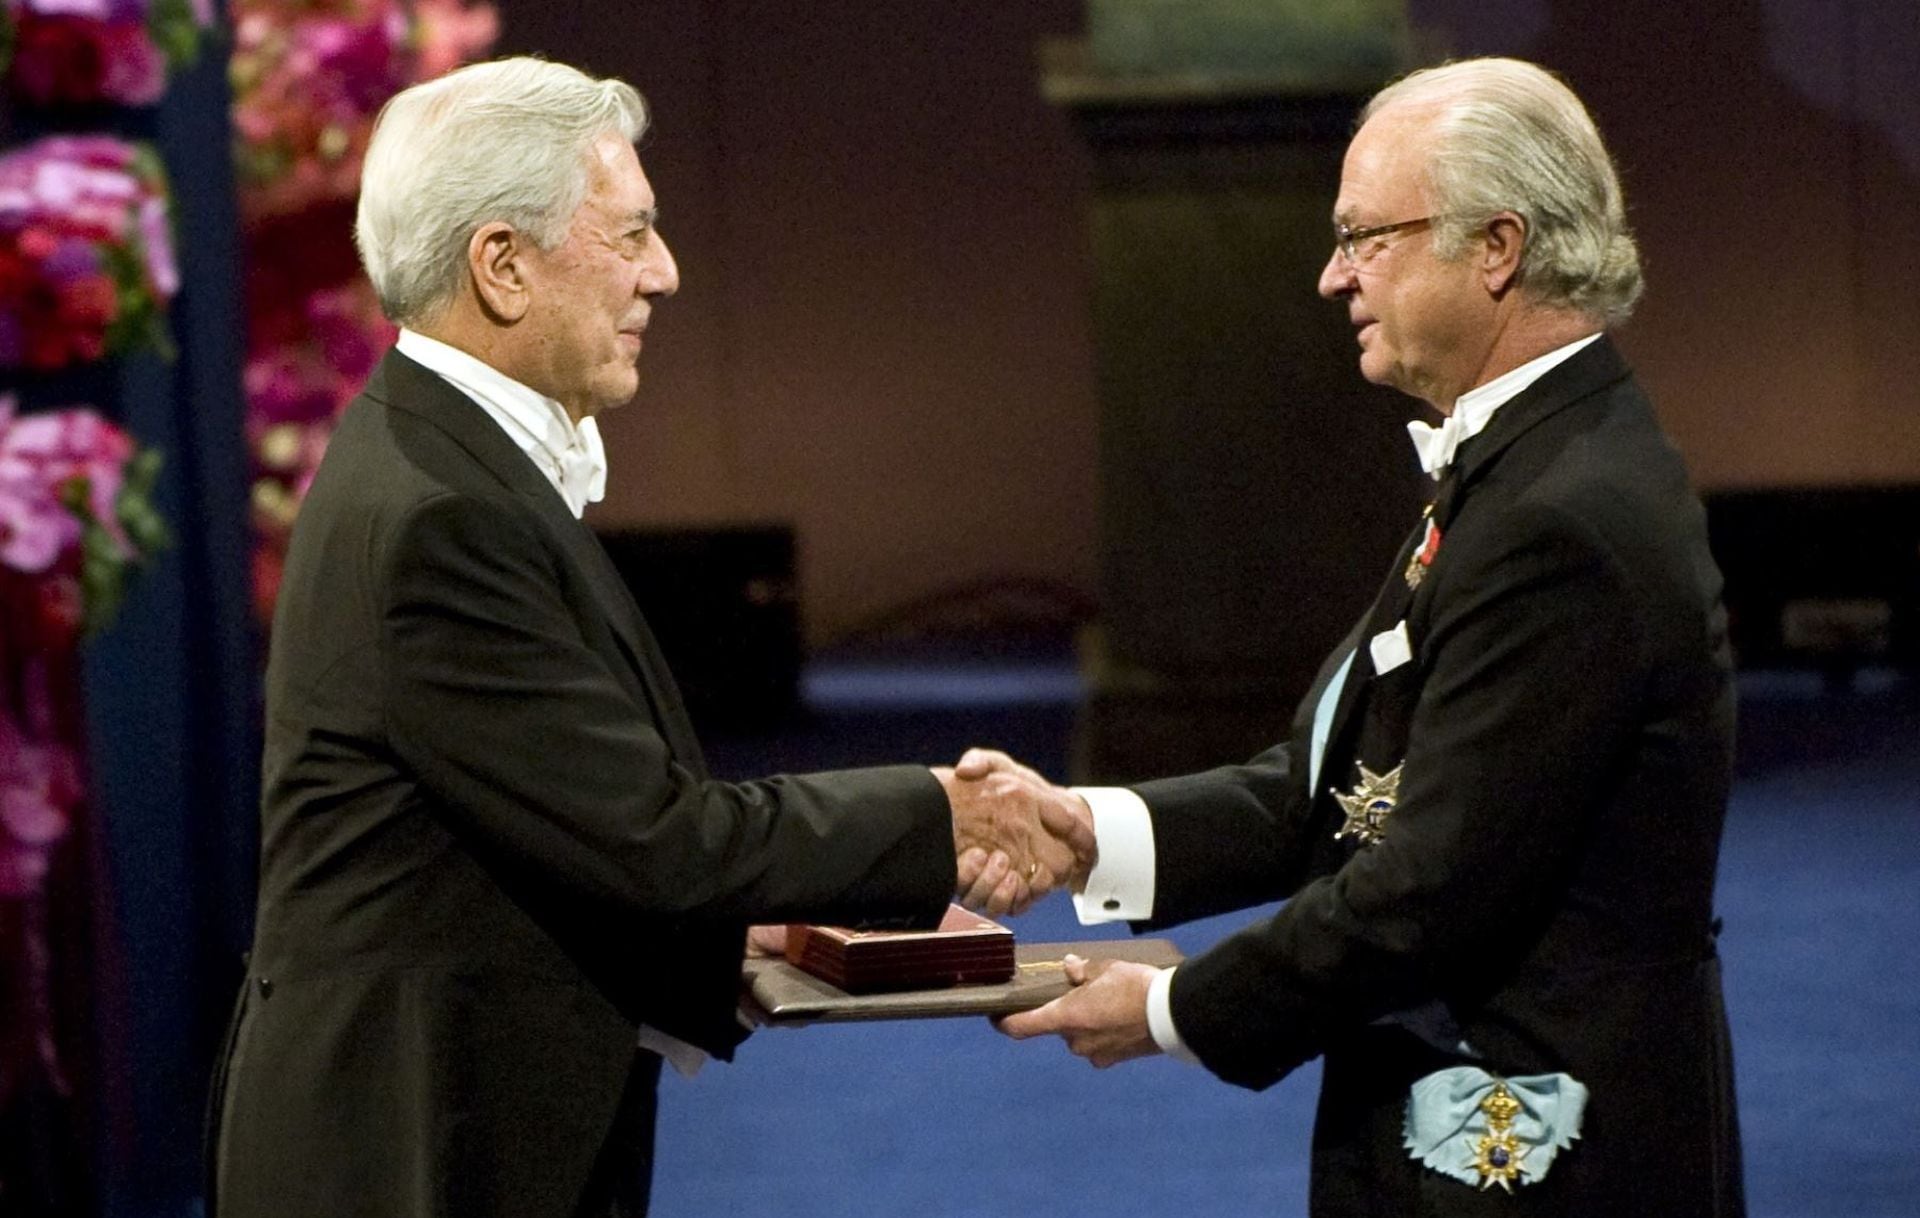 Mario Vargas Llosa receives the Nobel Prize